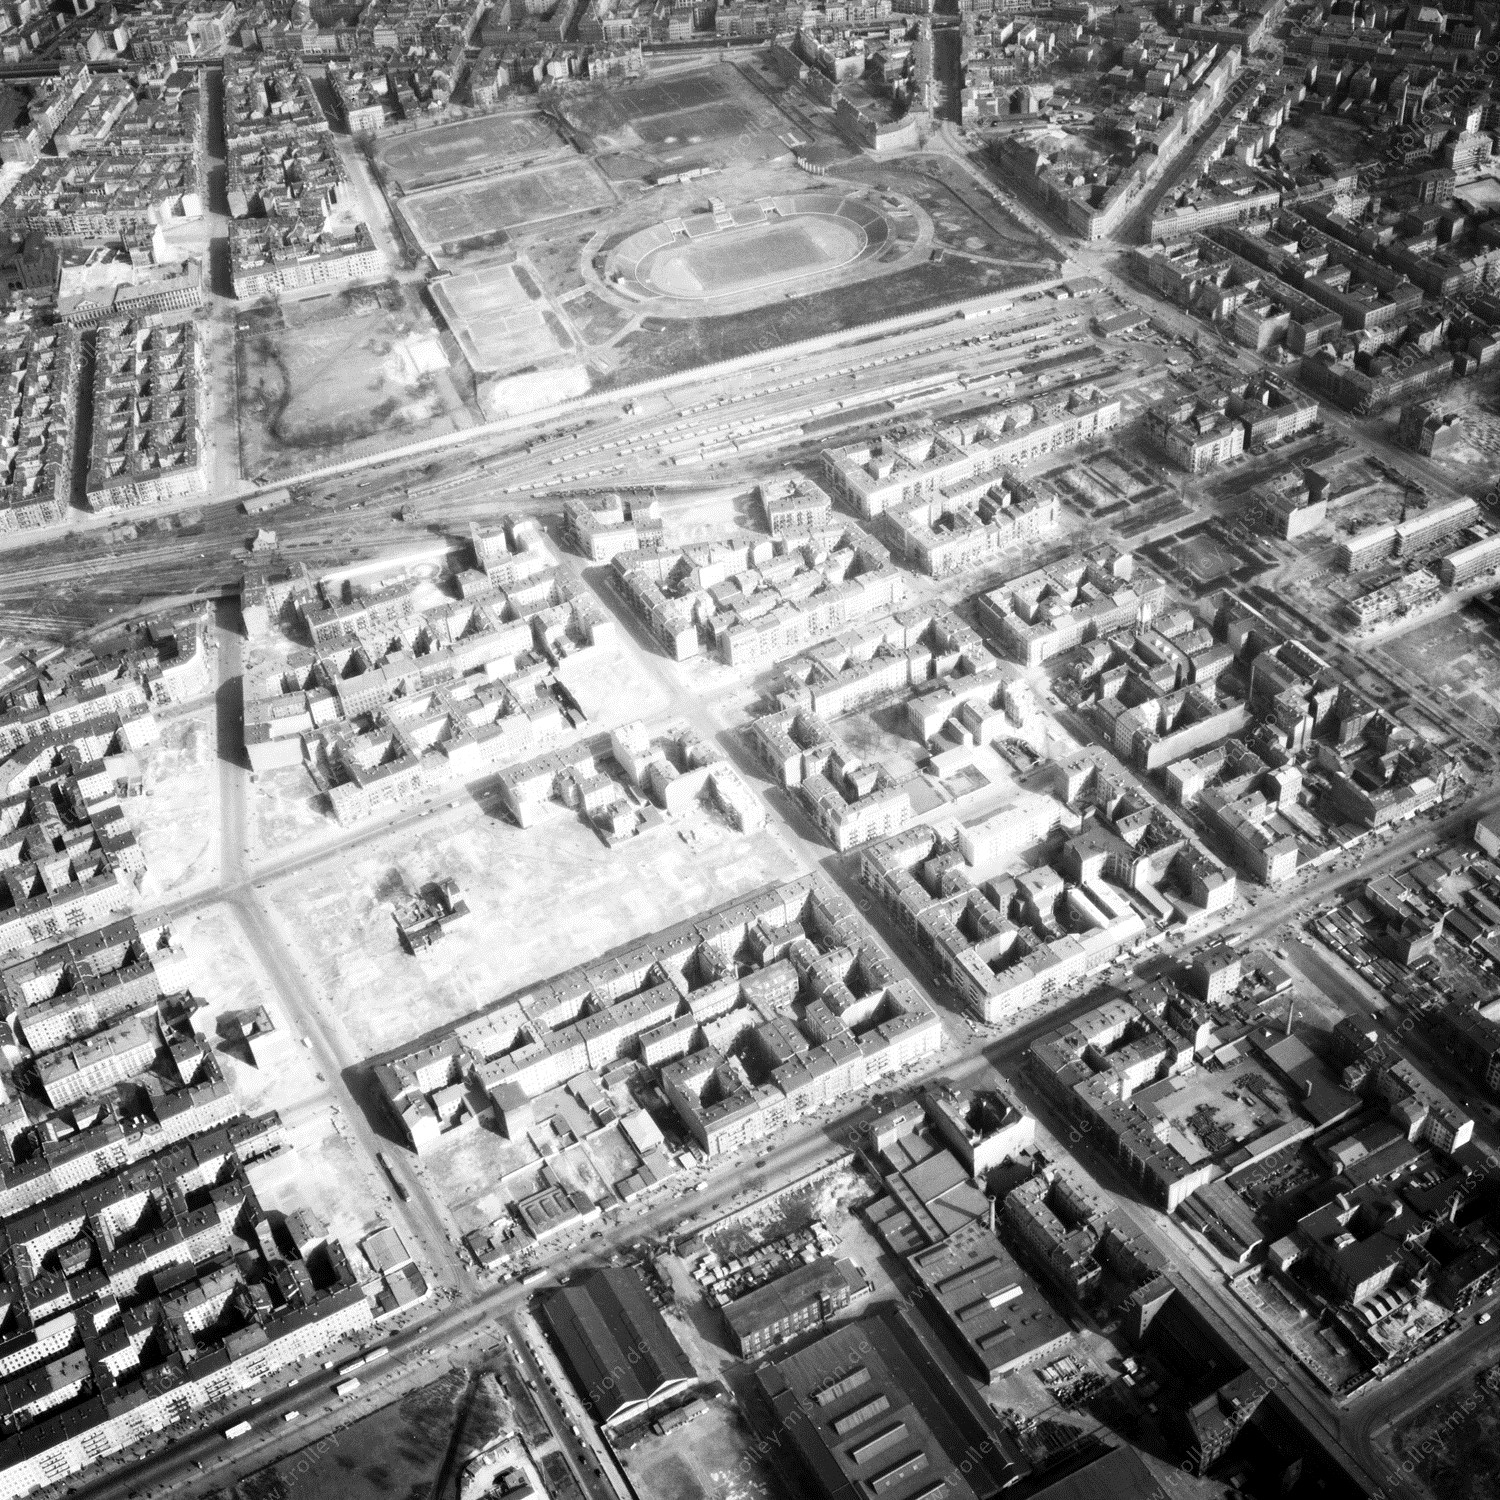 Alte Fotos und Luftbilder von Berlin - Luftbildaufnahme Nr. 04 - Historische Luftaufnahmen von West-Berlin aus dem Jahr 1954 - Flugstrecke Sierra